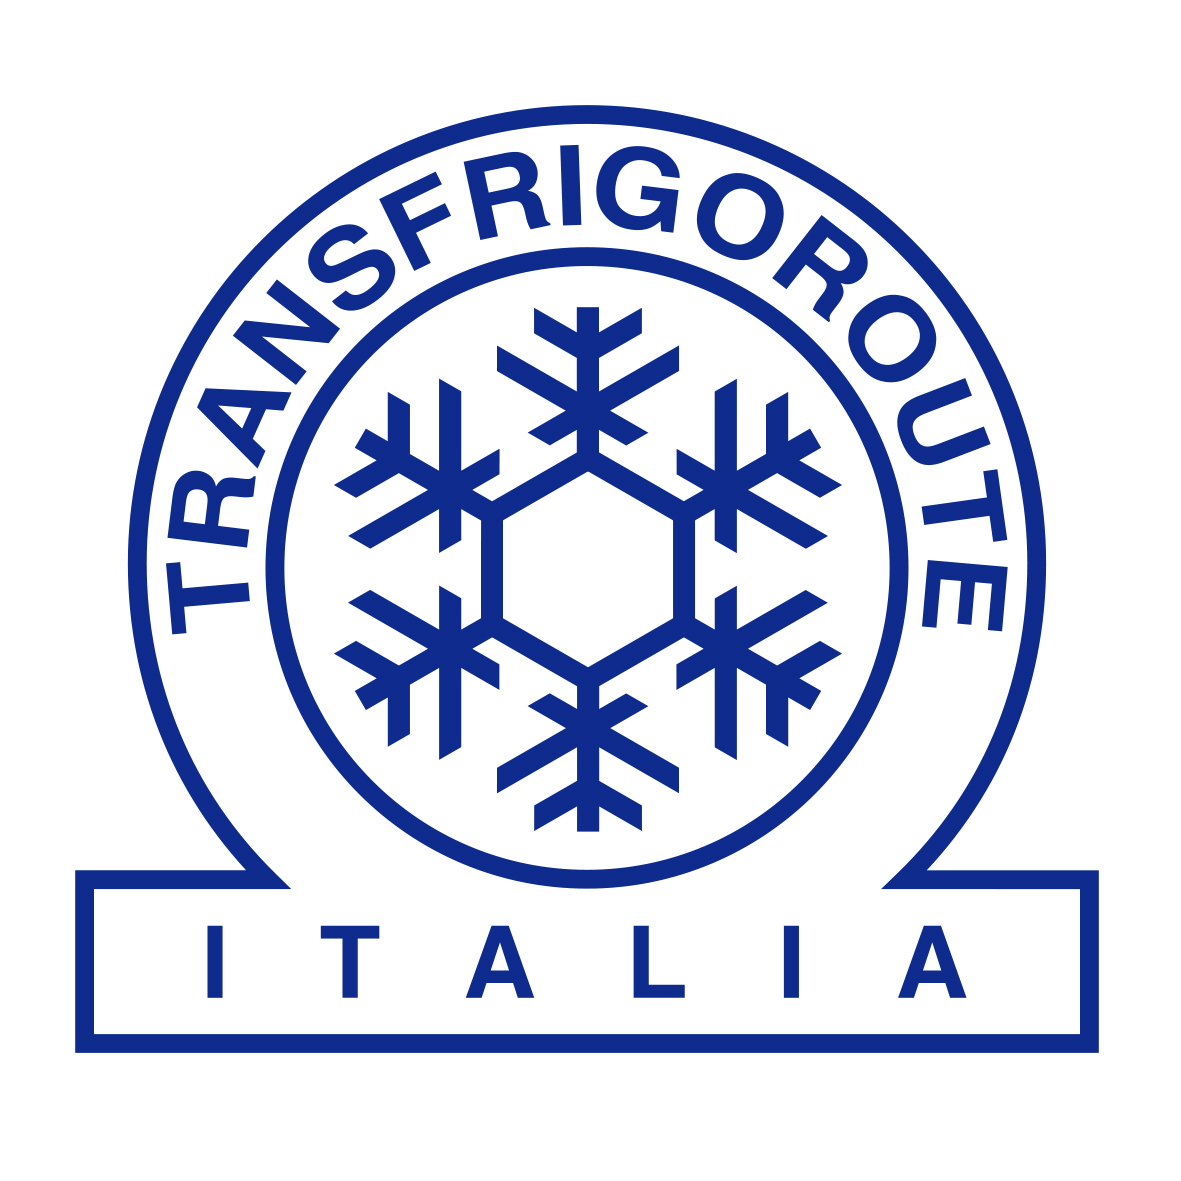 Comunicato stampa ANITA-Transfrigoroute Italia: Assemblea annuale Transfrigoroute International - Napoli, 26 e 27 settembre 2019